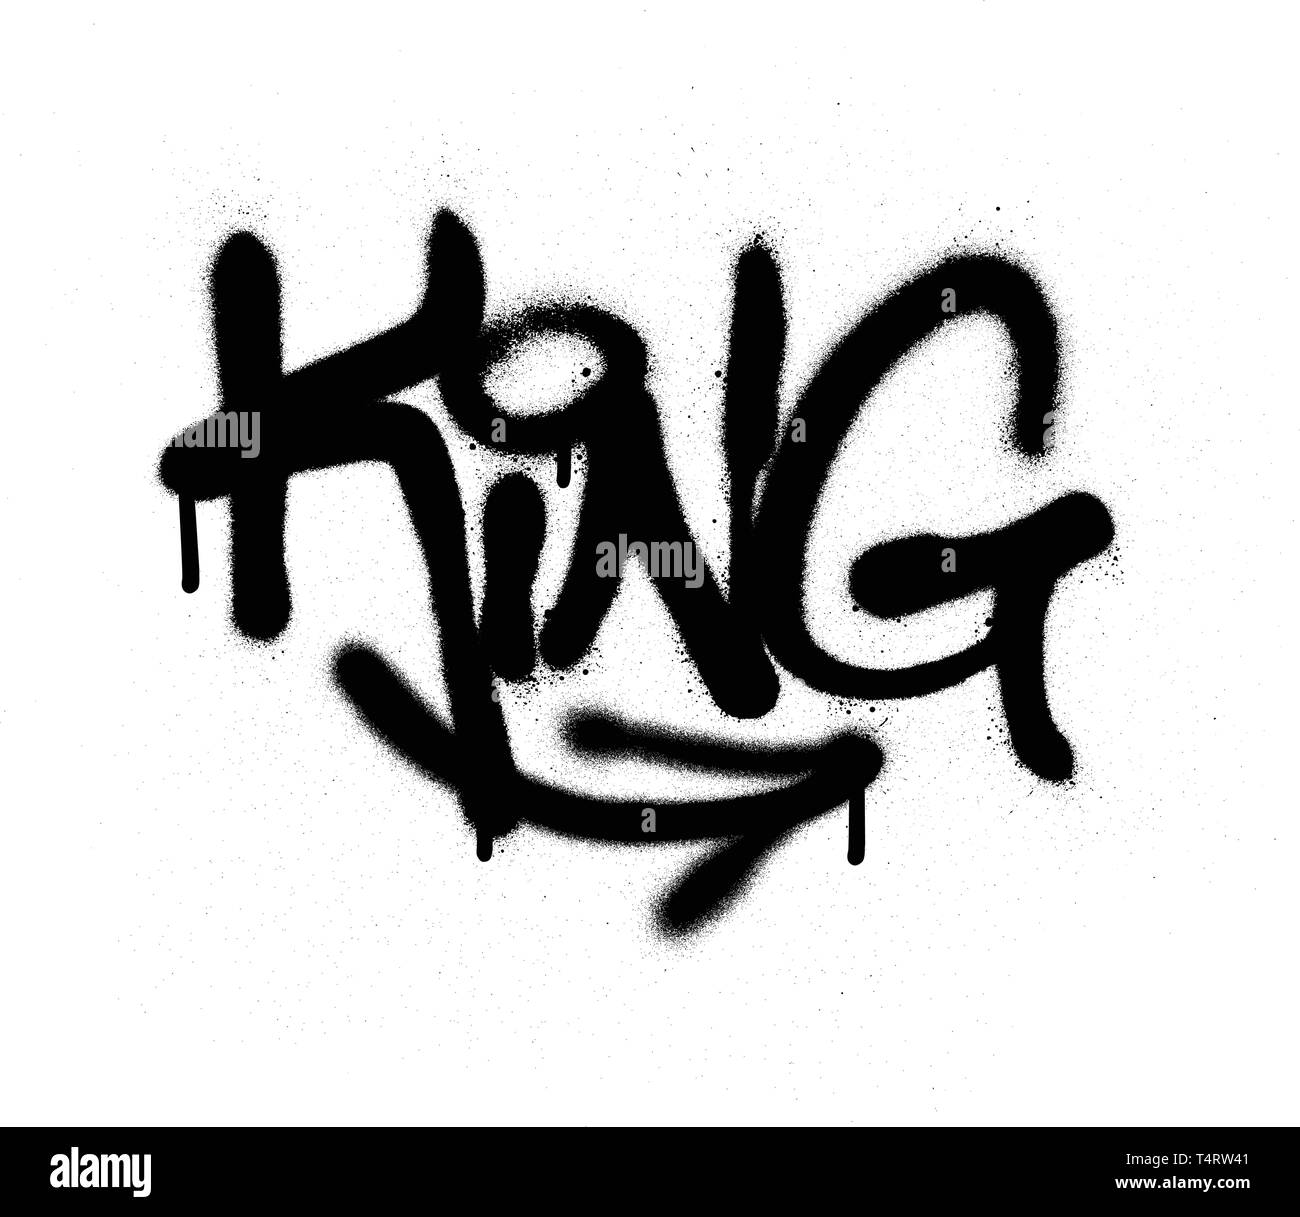 Tag graffiti king pulvérisés avec fuite dans le noir sur blanc Illustration de Vecteur